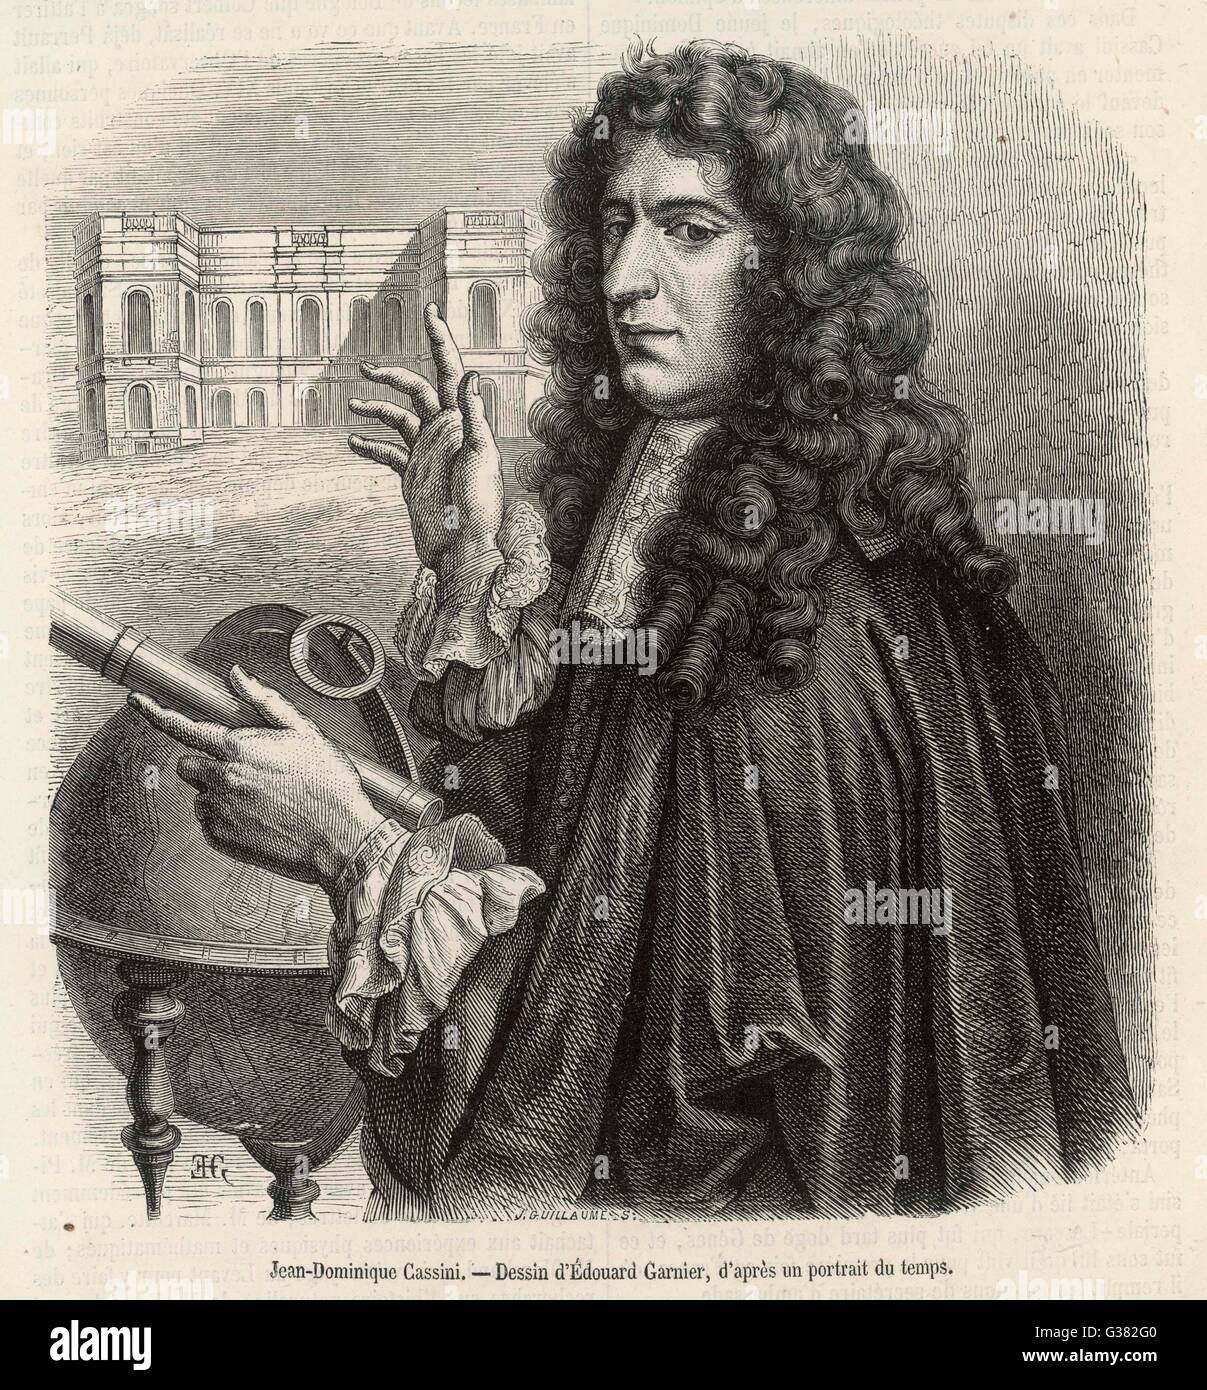 GIOVANNI DOMENICO CASSINI Jean-Dominique plus tard, astronome français et premier directeur de l'Observatoire de Paris, qui a découvert quatre des lunes de Saturne Date : 1625 - 1712 Banque D'Images